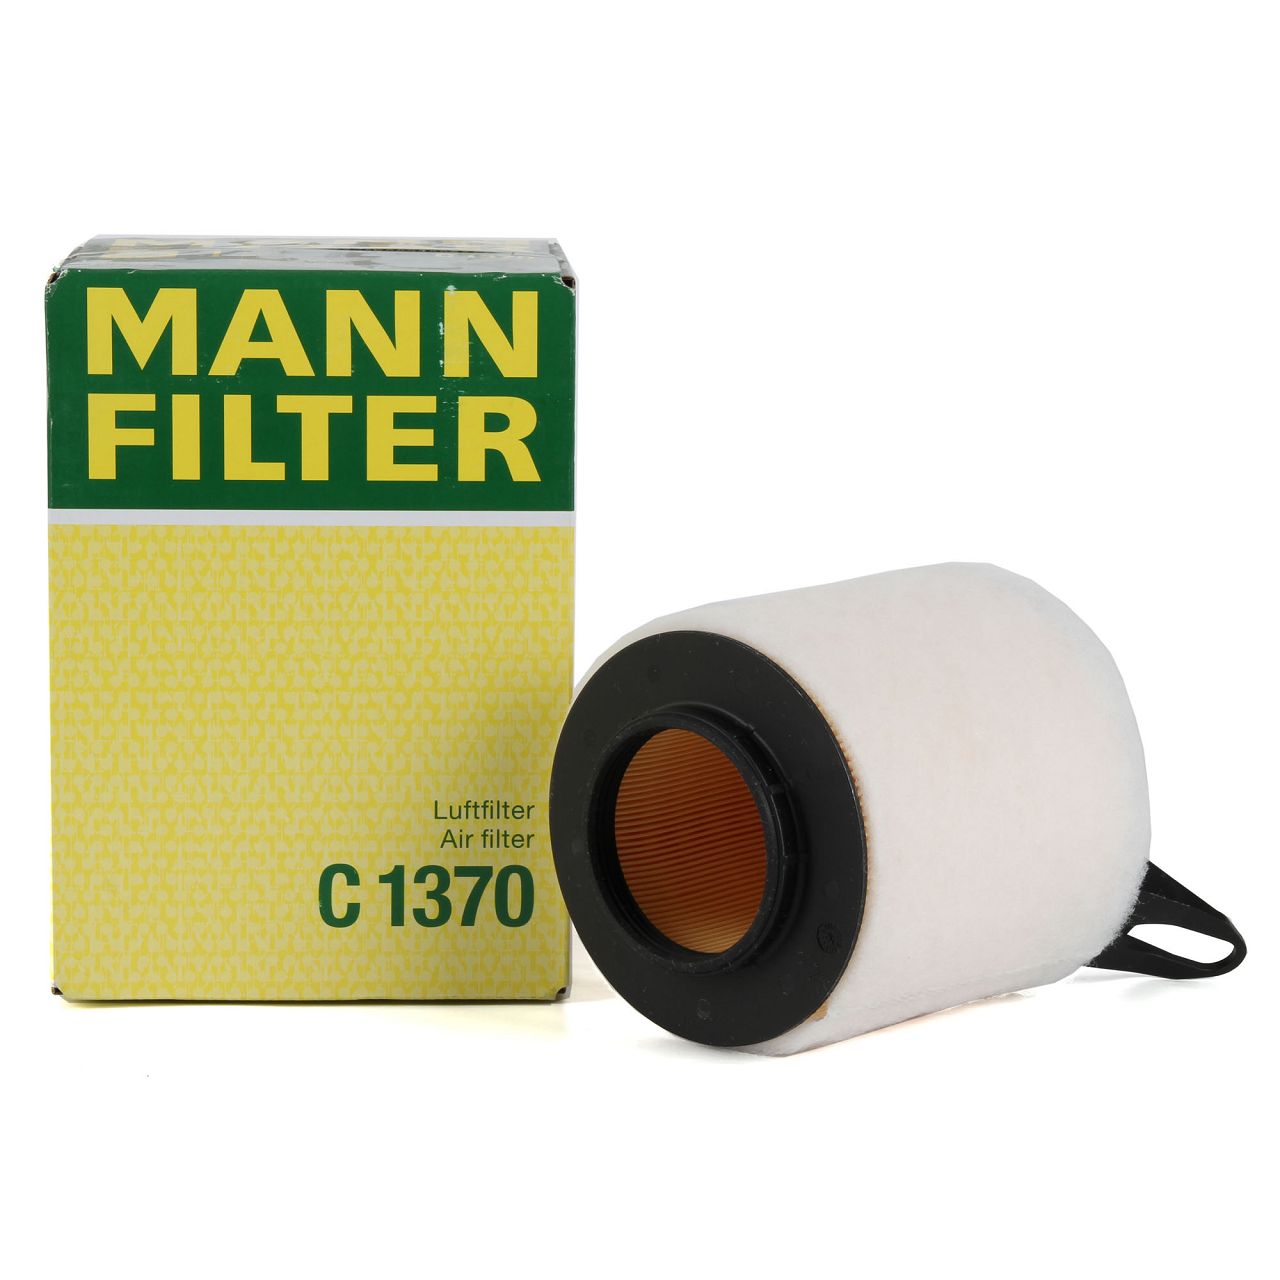 MANN C1370 Luftfilter BMW 1er E81 E87 3er E90 E91 E92 316i 115/121/122 PS